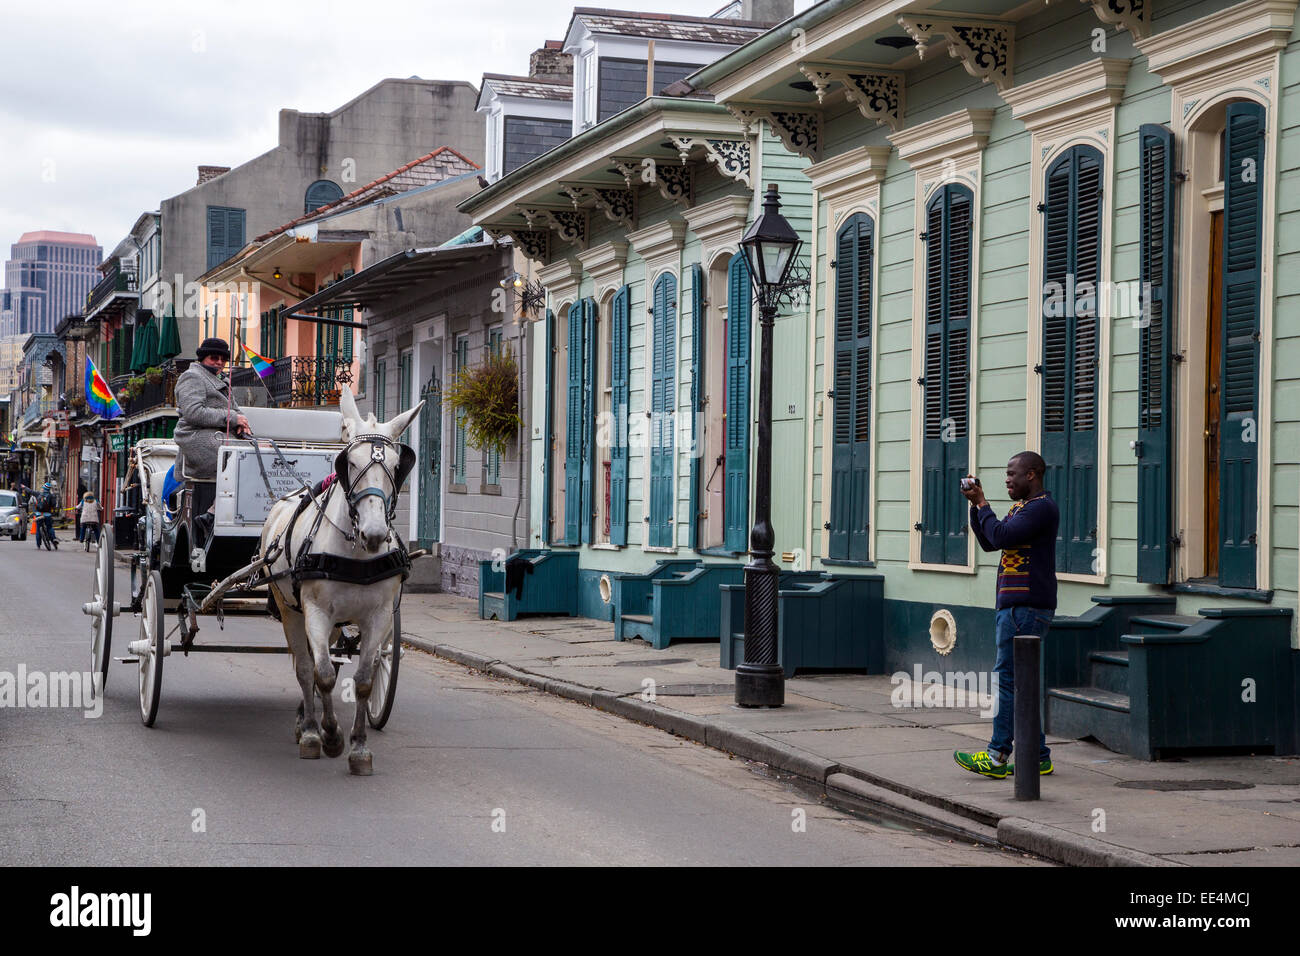 Quartier français, la Nouvelle Orléans, Louisiane. Mule en calèche en passant devant deux maisons, fusil de Bourbon Street. Banque D'Images